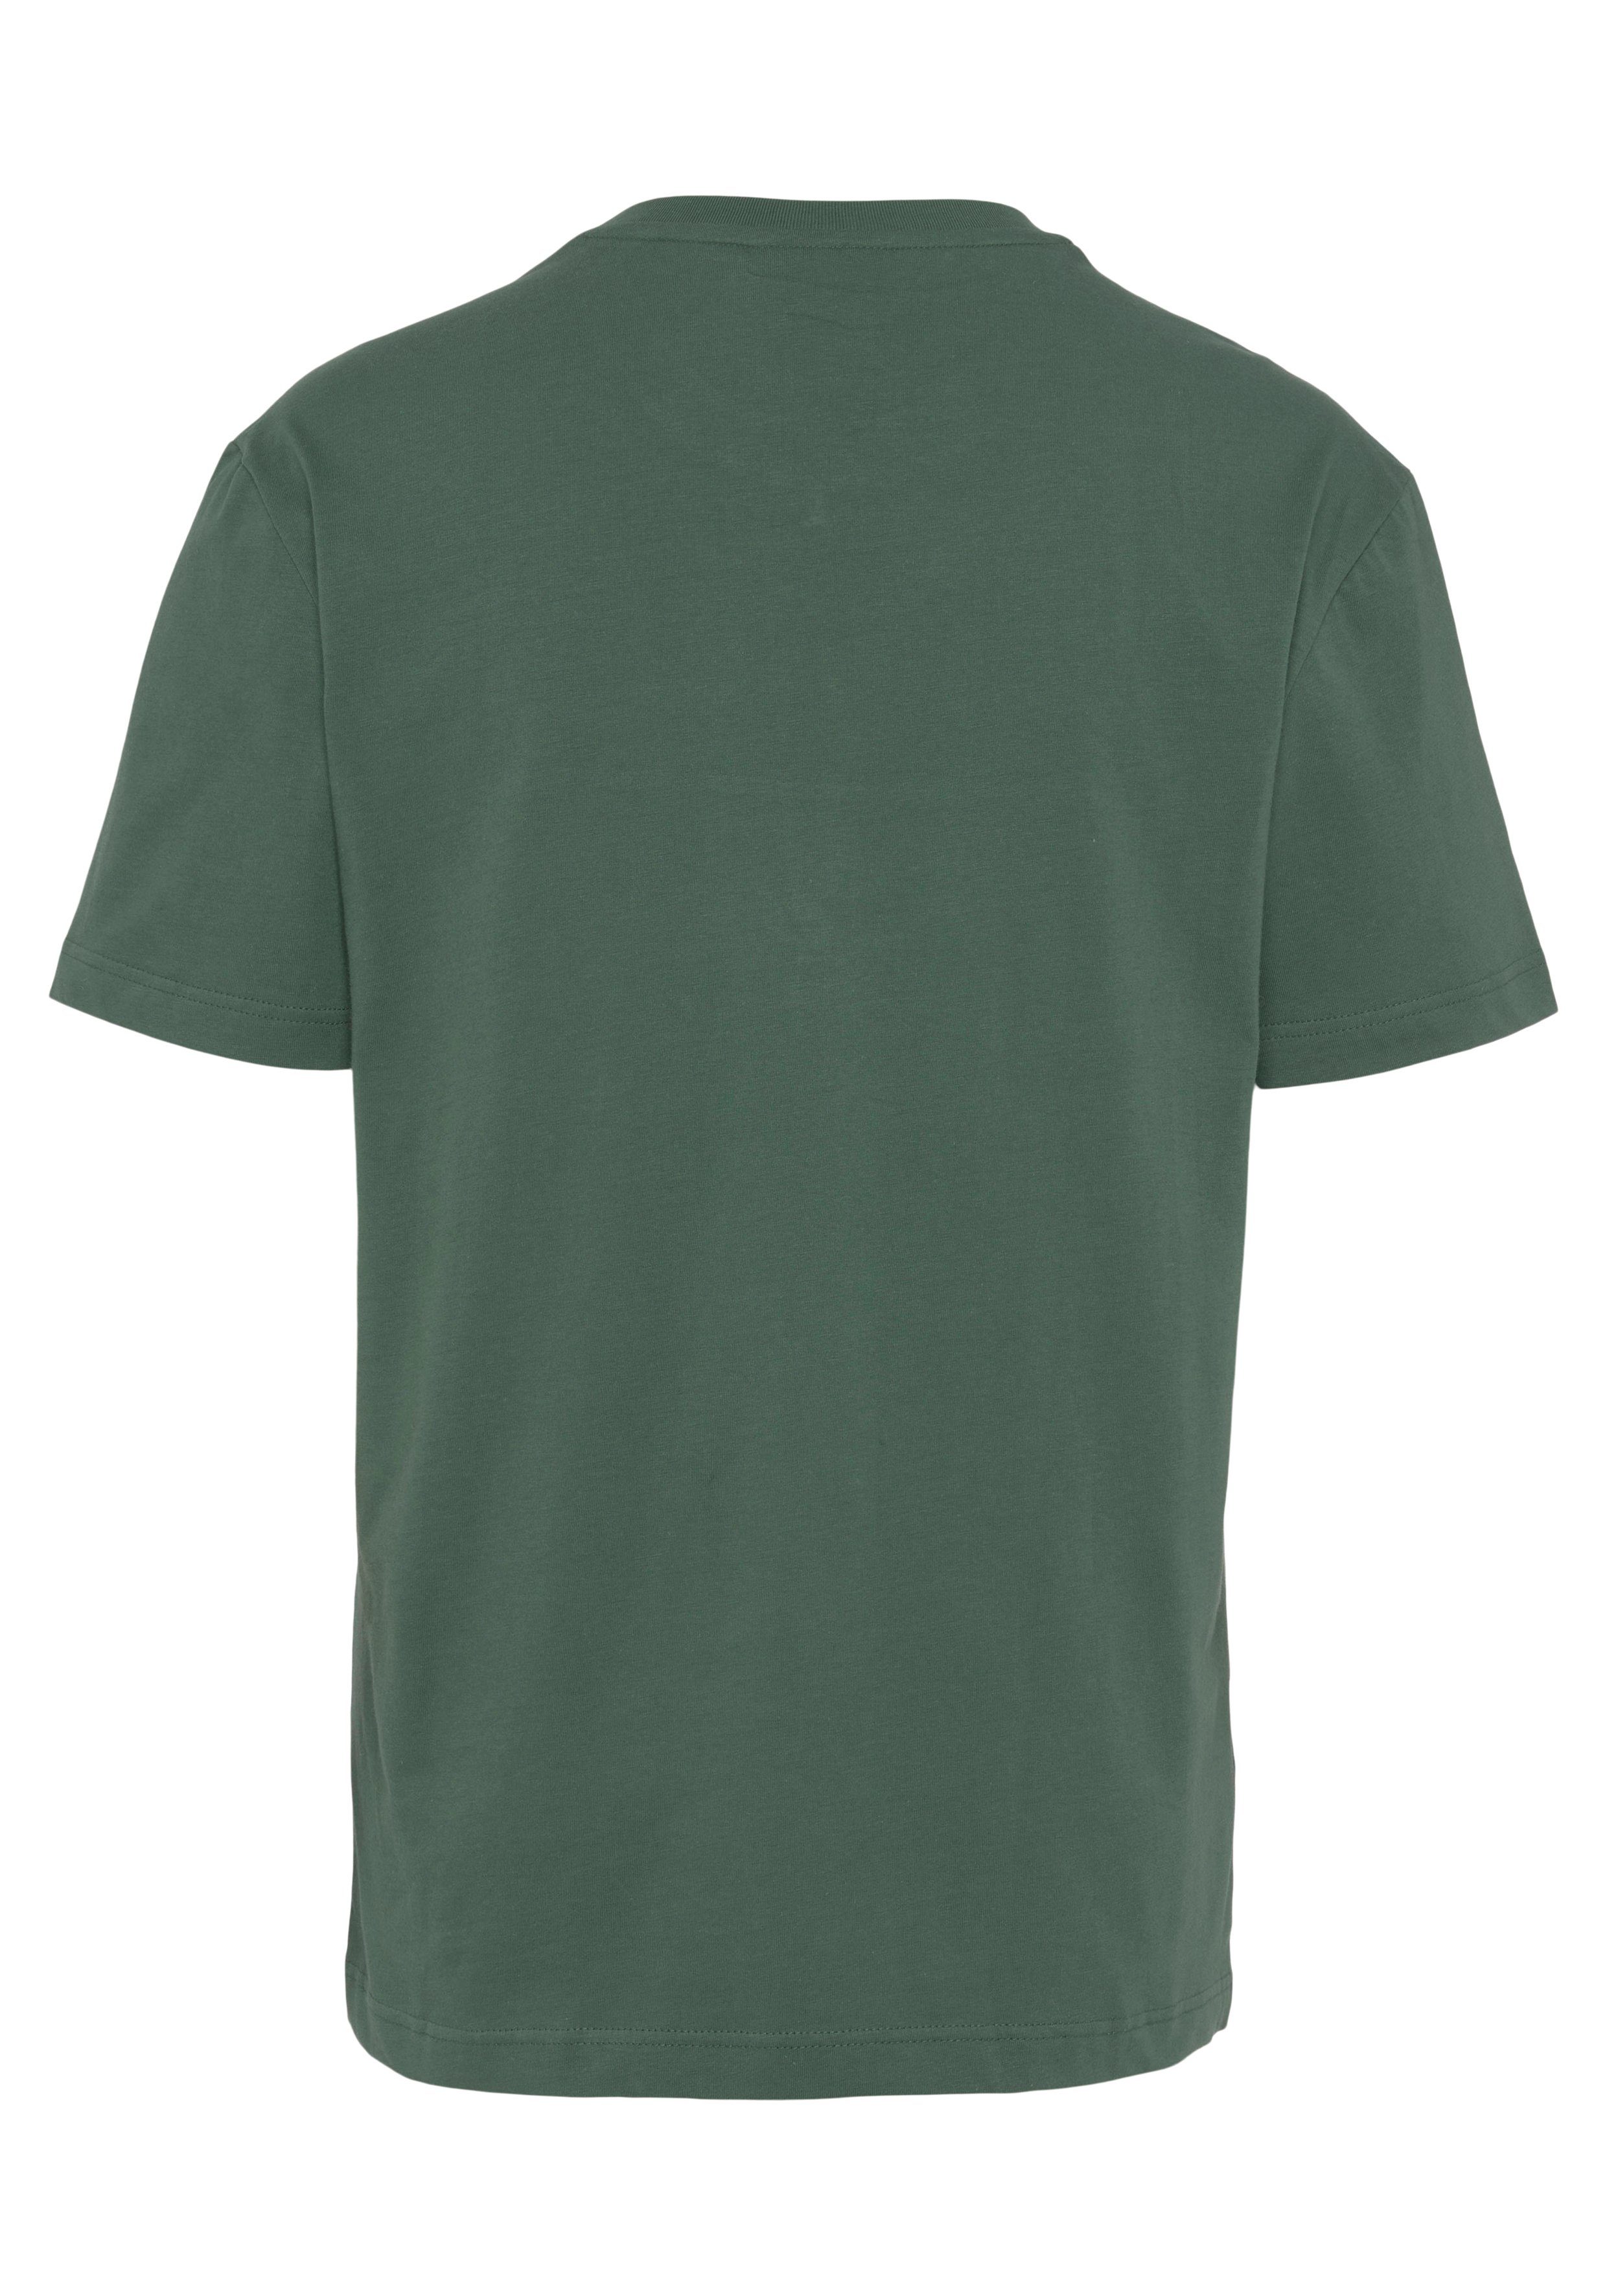 der grün-marine Lacoste mit T-Shirt T-SHIRT Brust großem auf Print